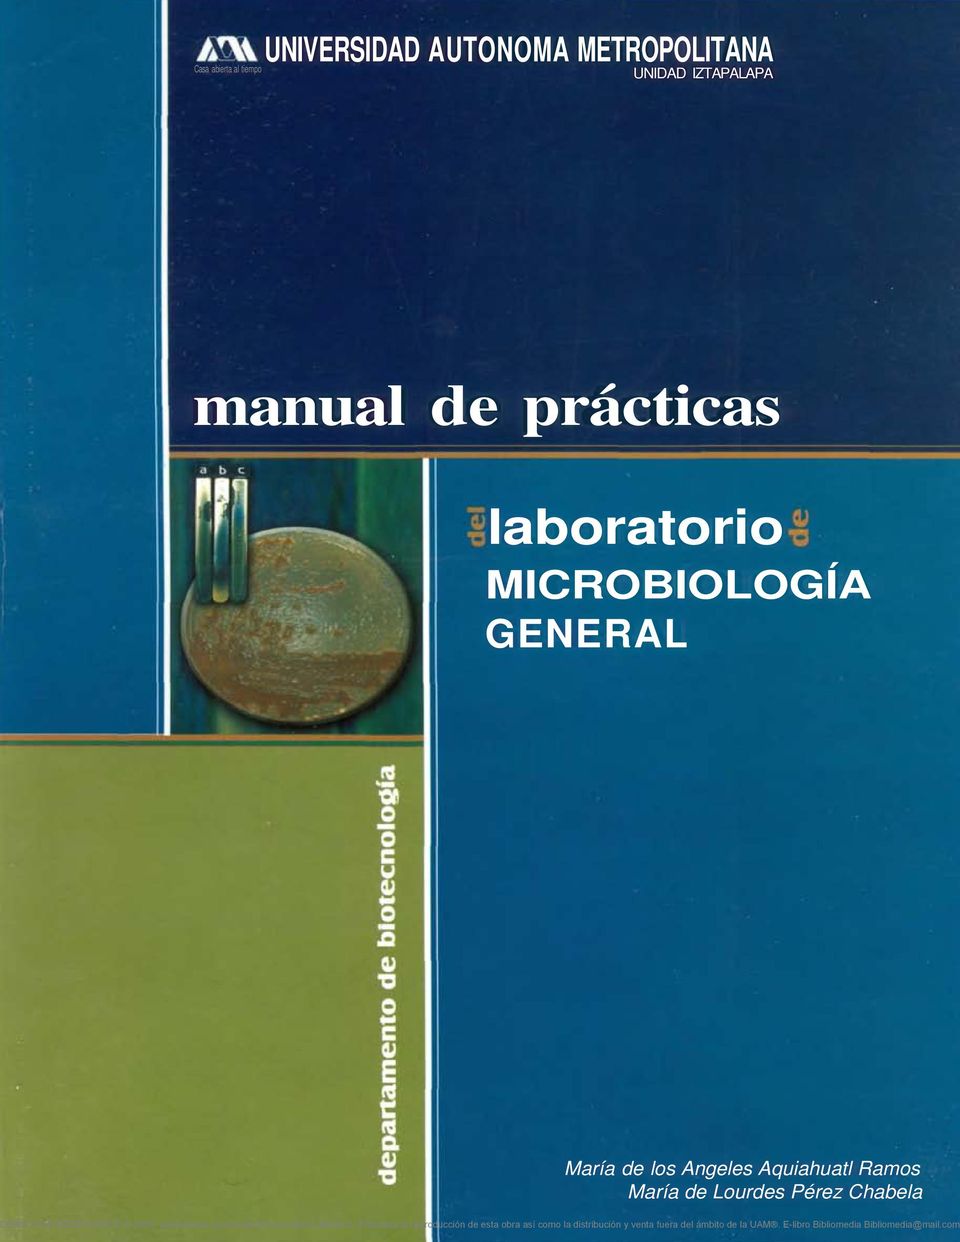 MICROBIOLOGÍA GENERAL María de los Angeles